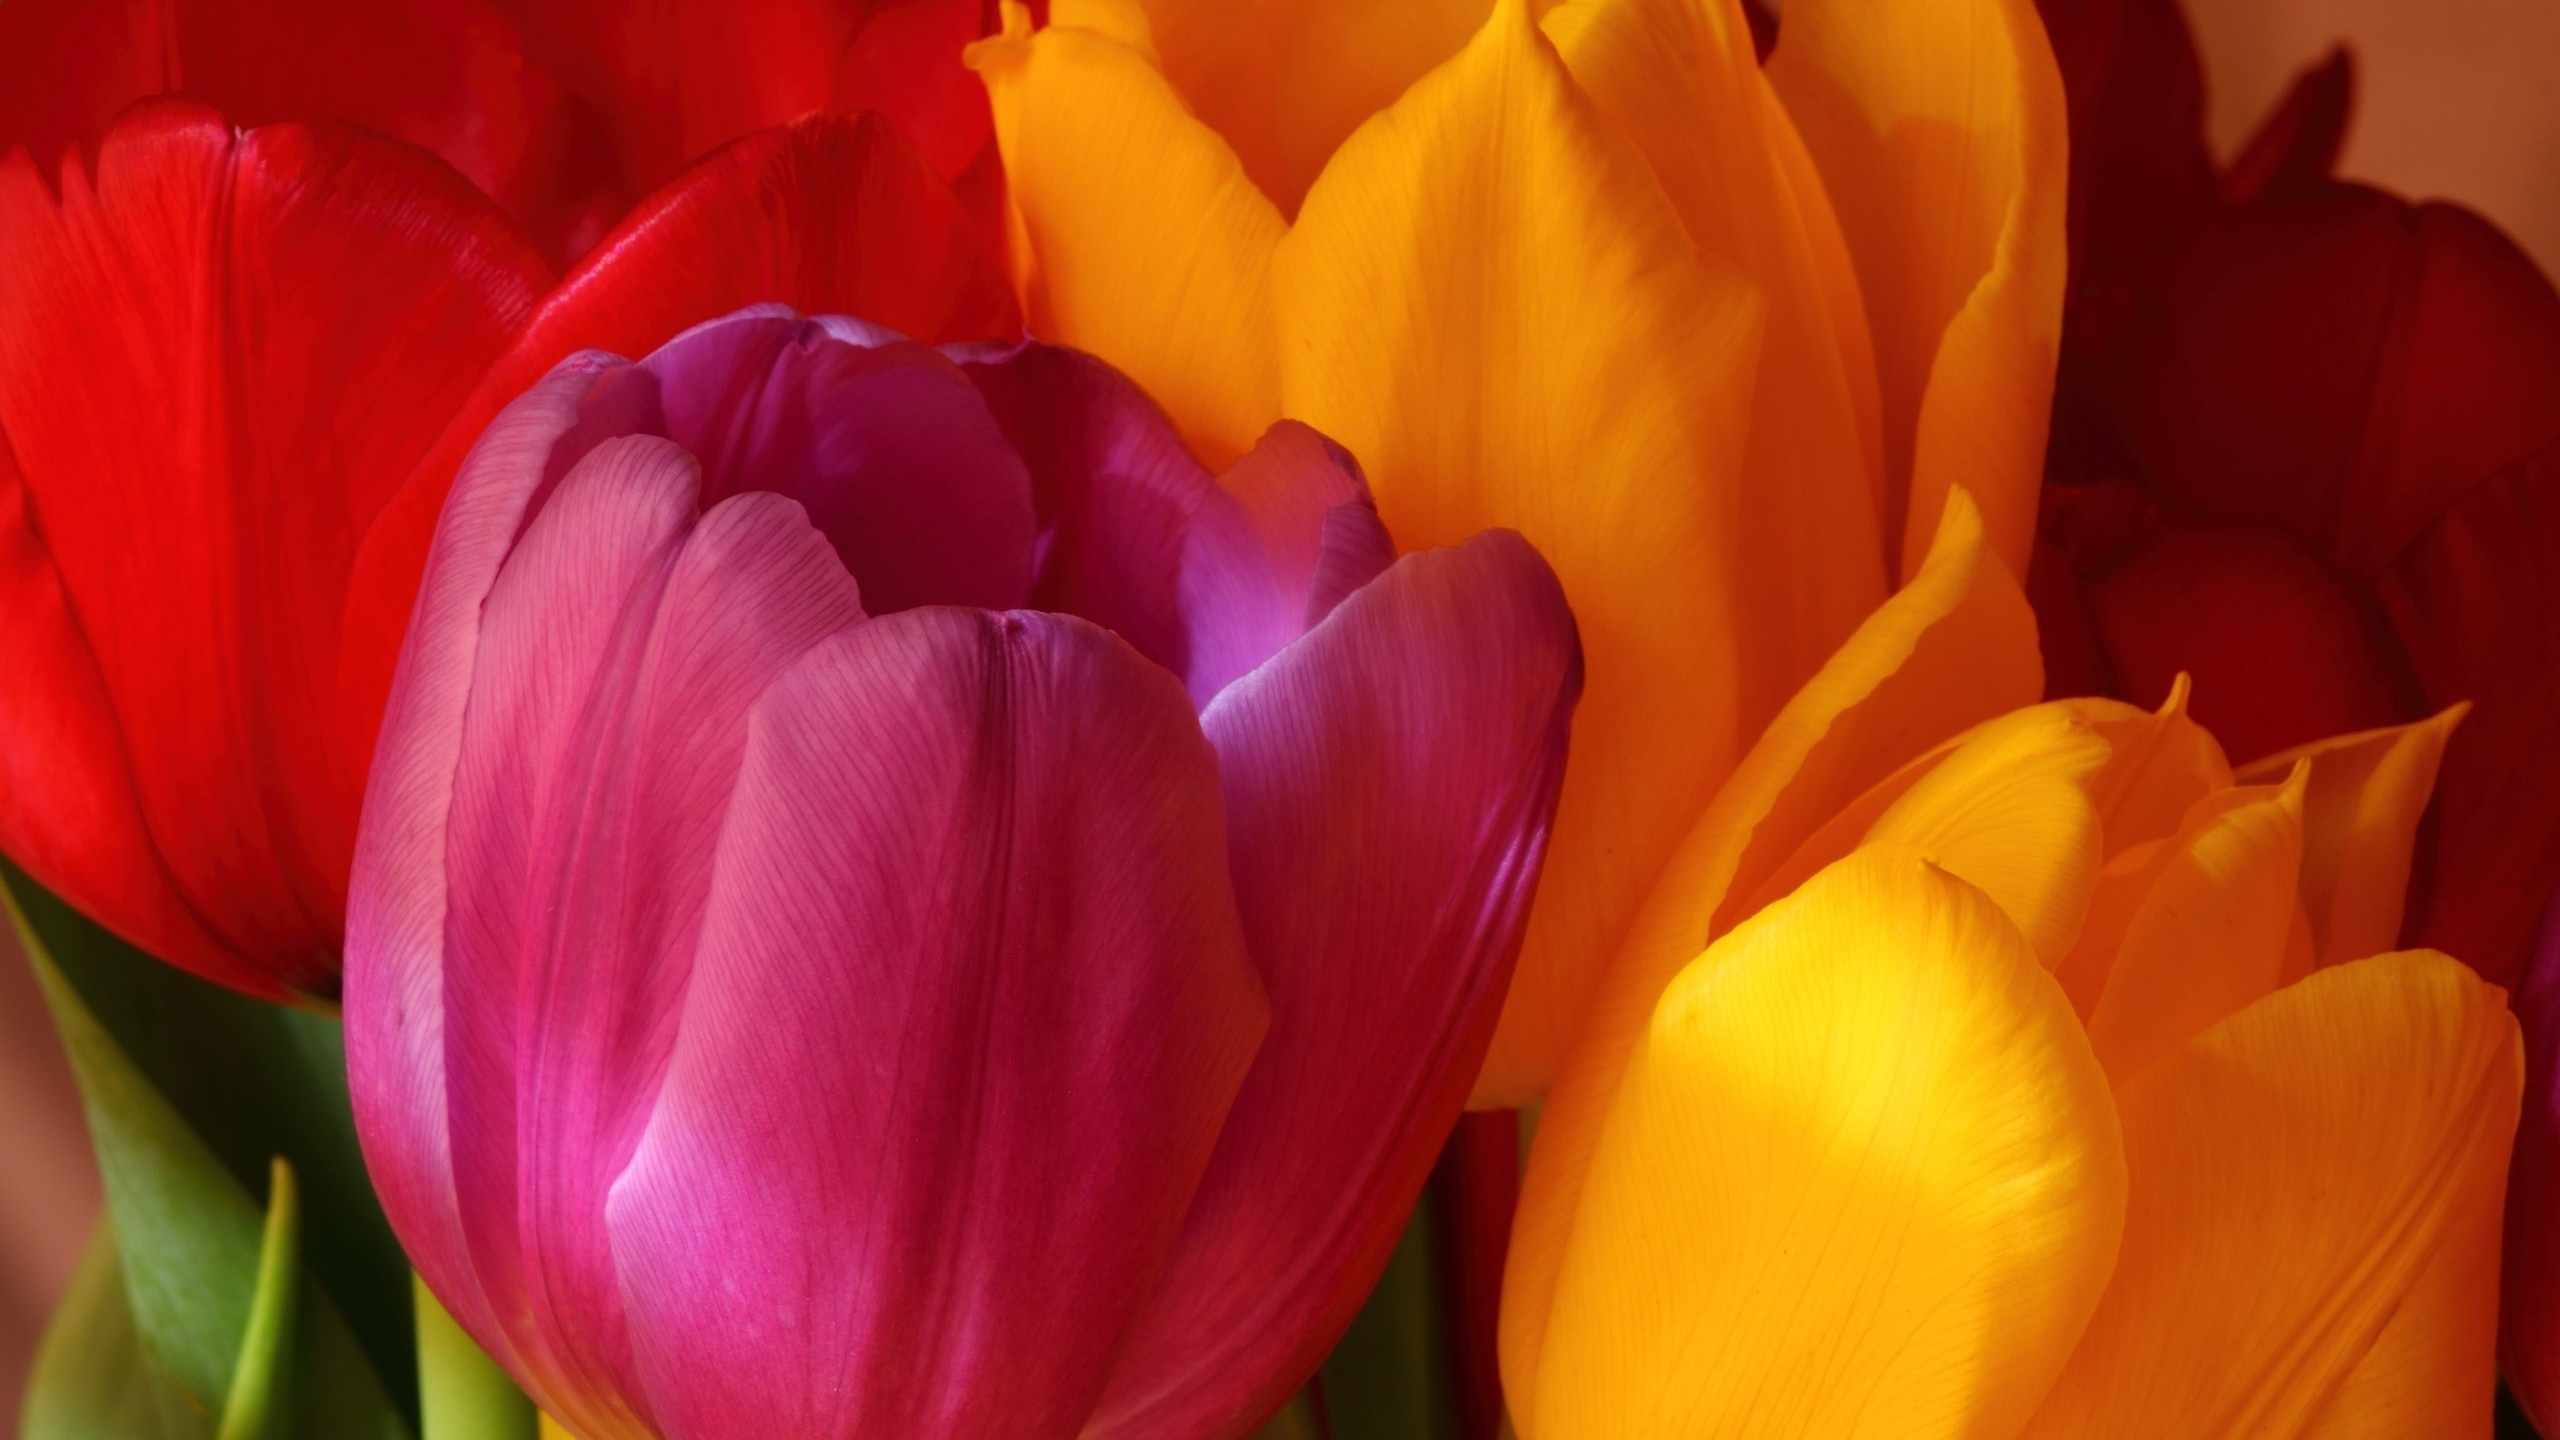 Wallpaper Tulips Desktop Puter Flowers